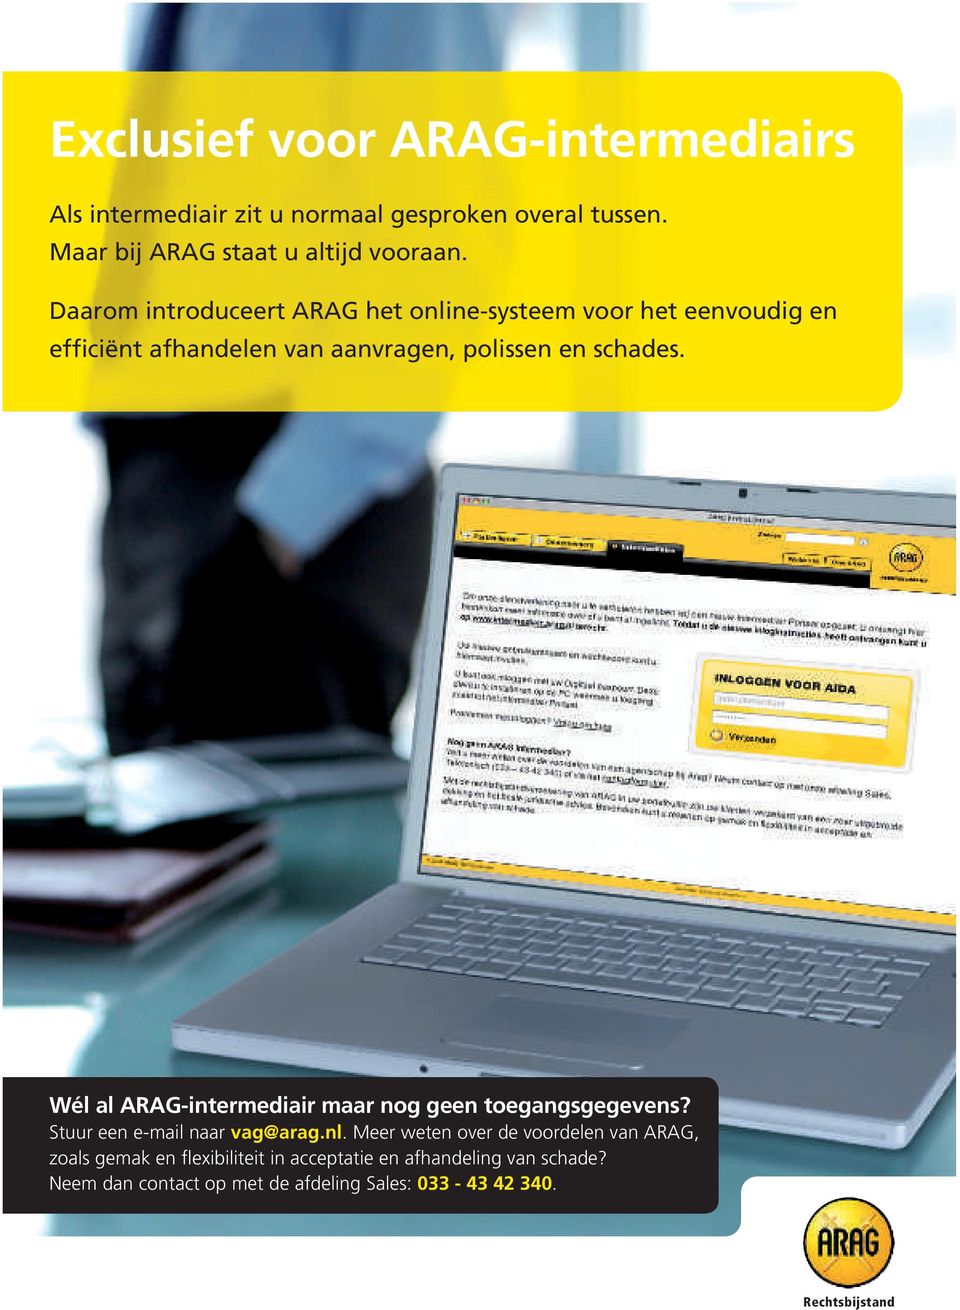 Wél al ARAG-intermediair maar nog geen toegangsgegevens? Stuur een e-mail naar vag@arag.nl.